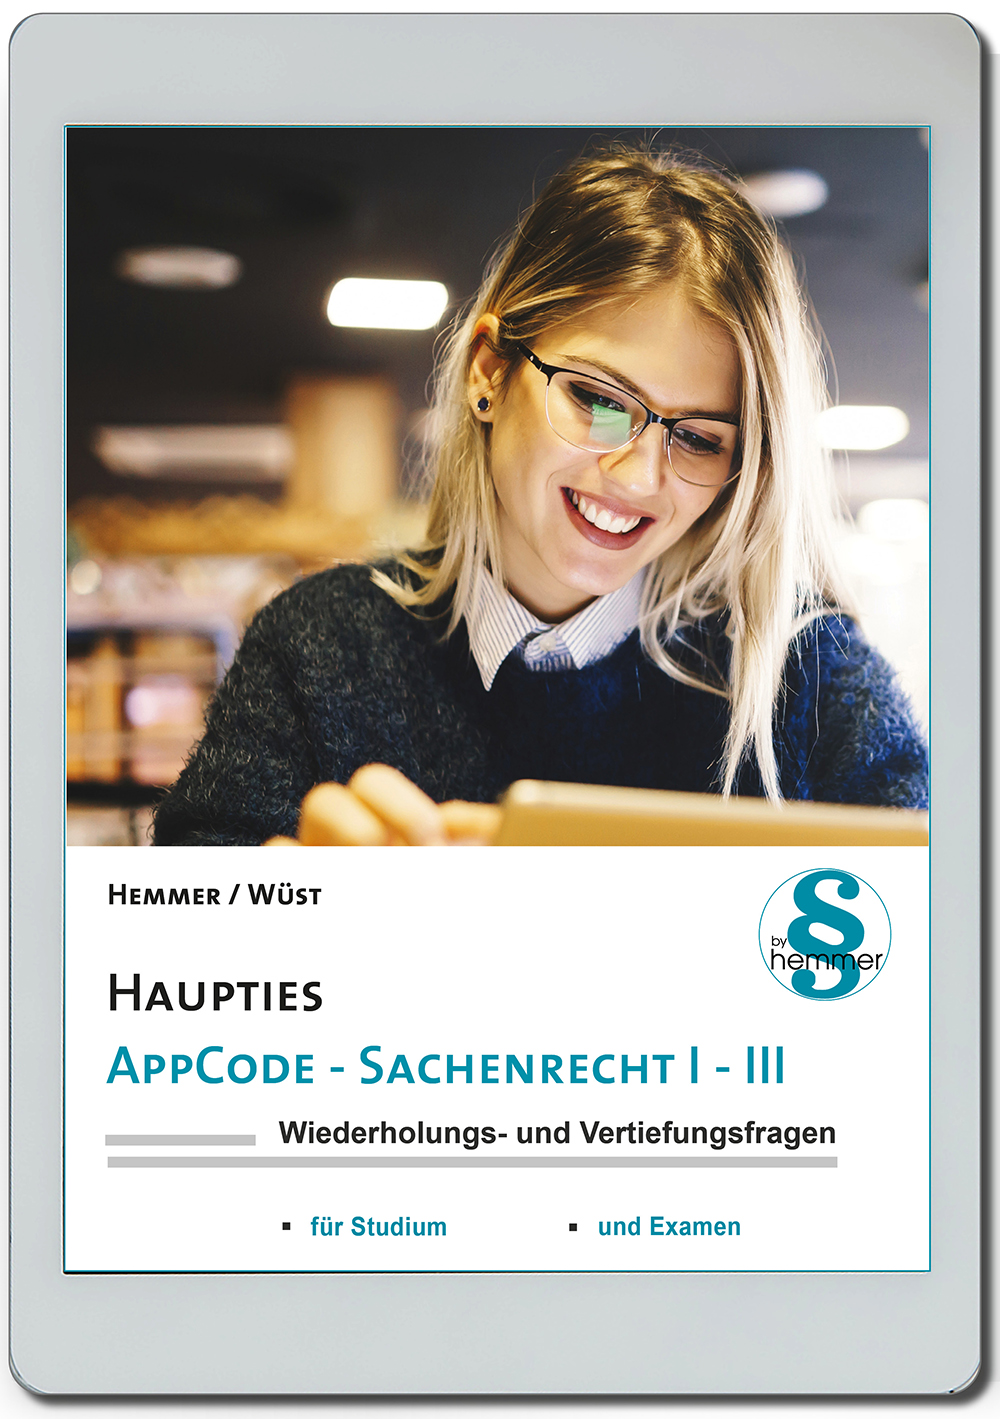 AppCode - haupties - Sachenrecht I - III